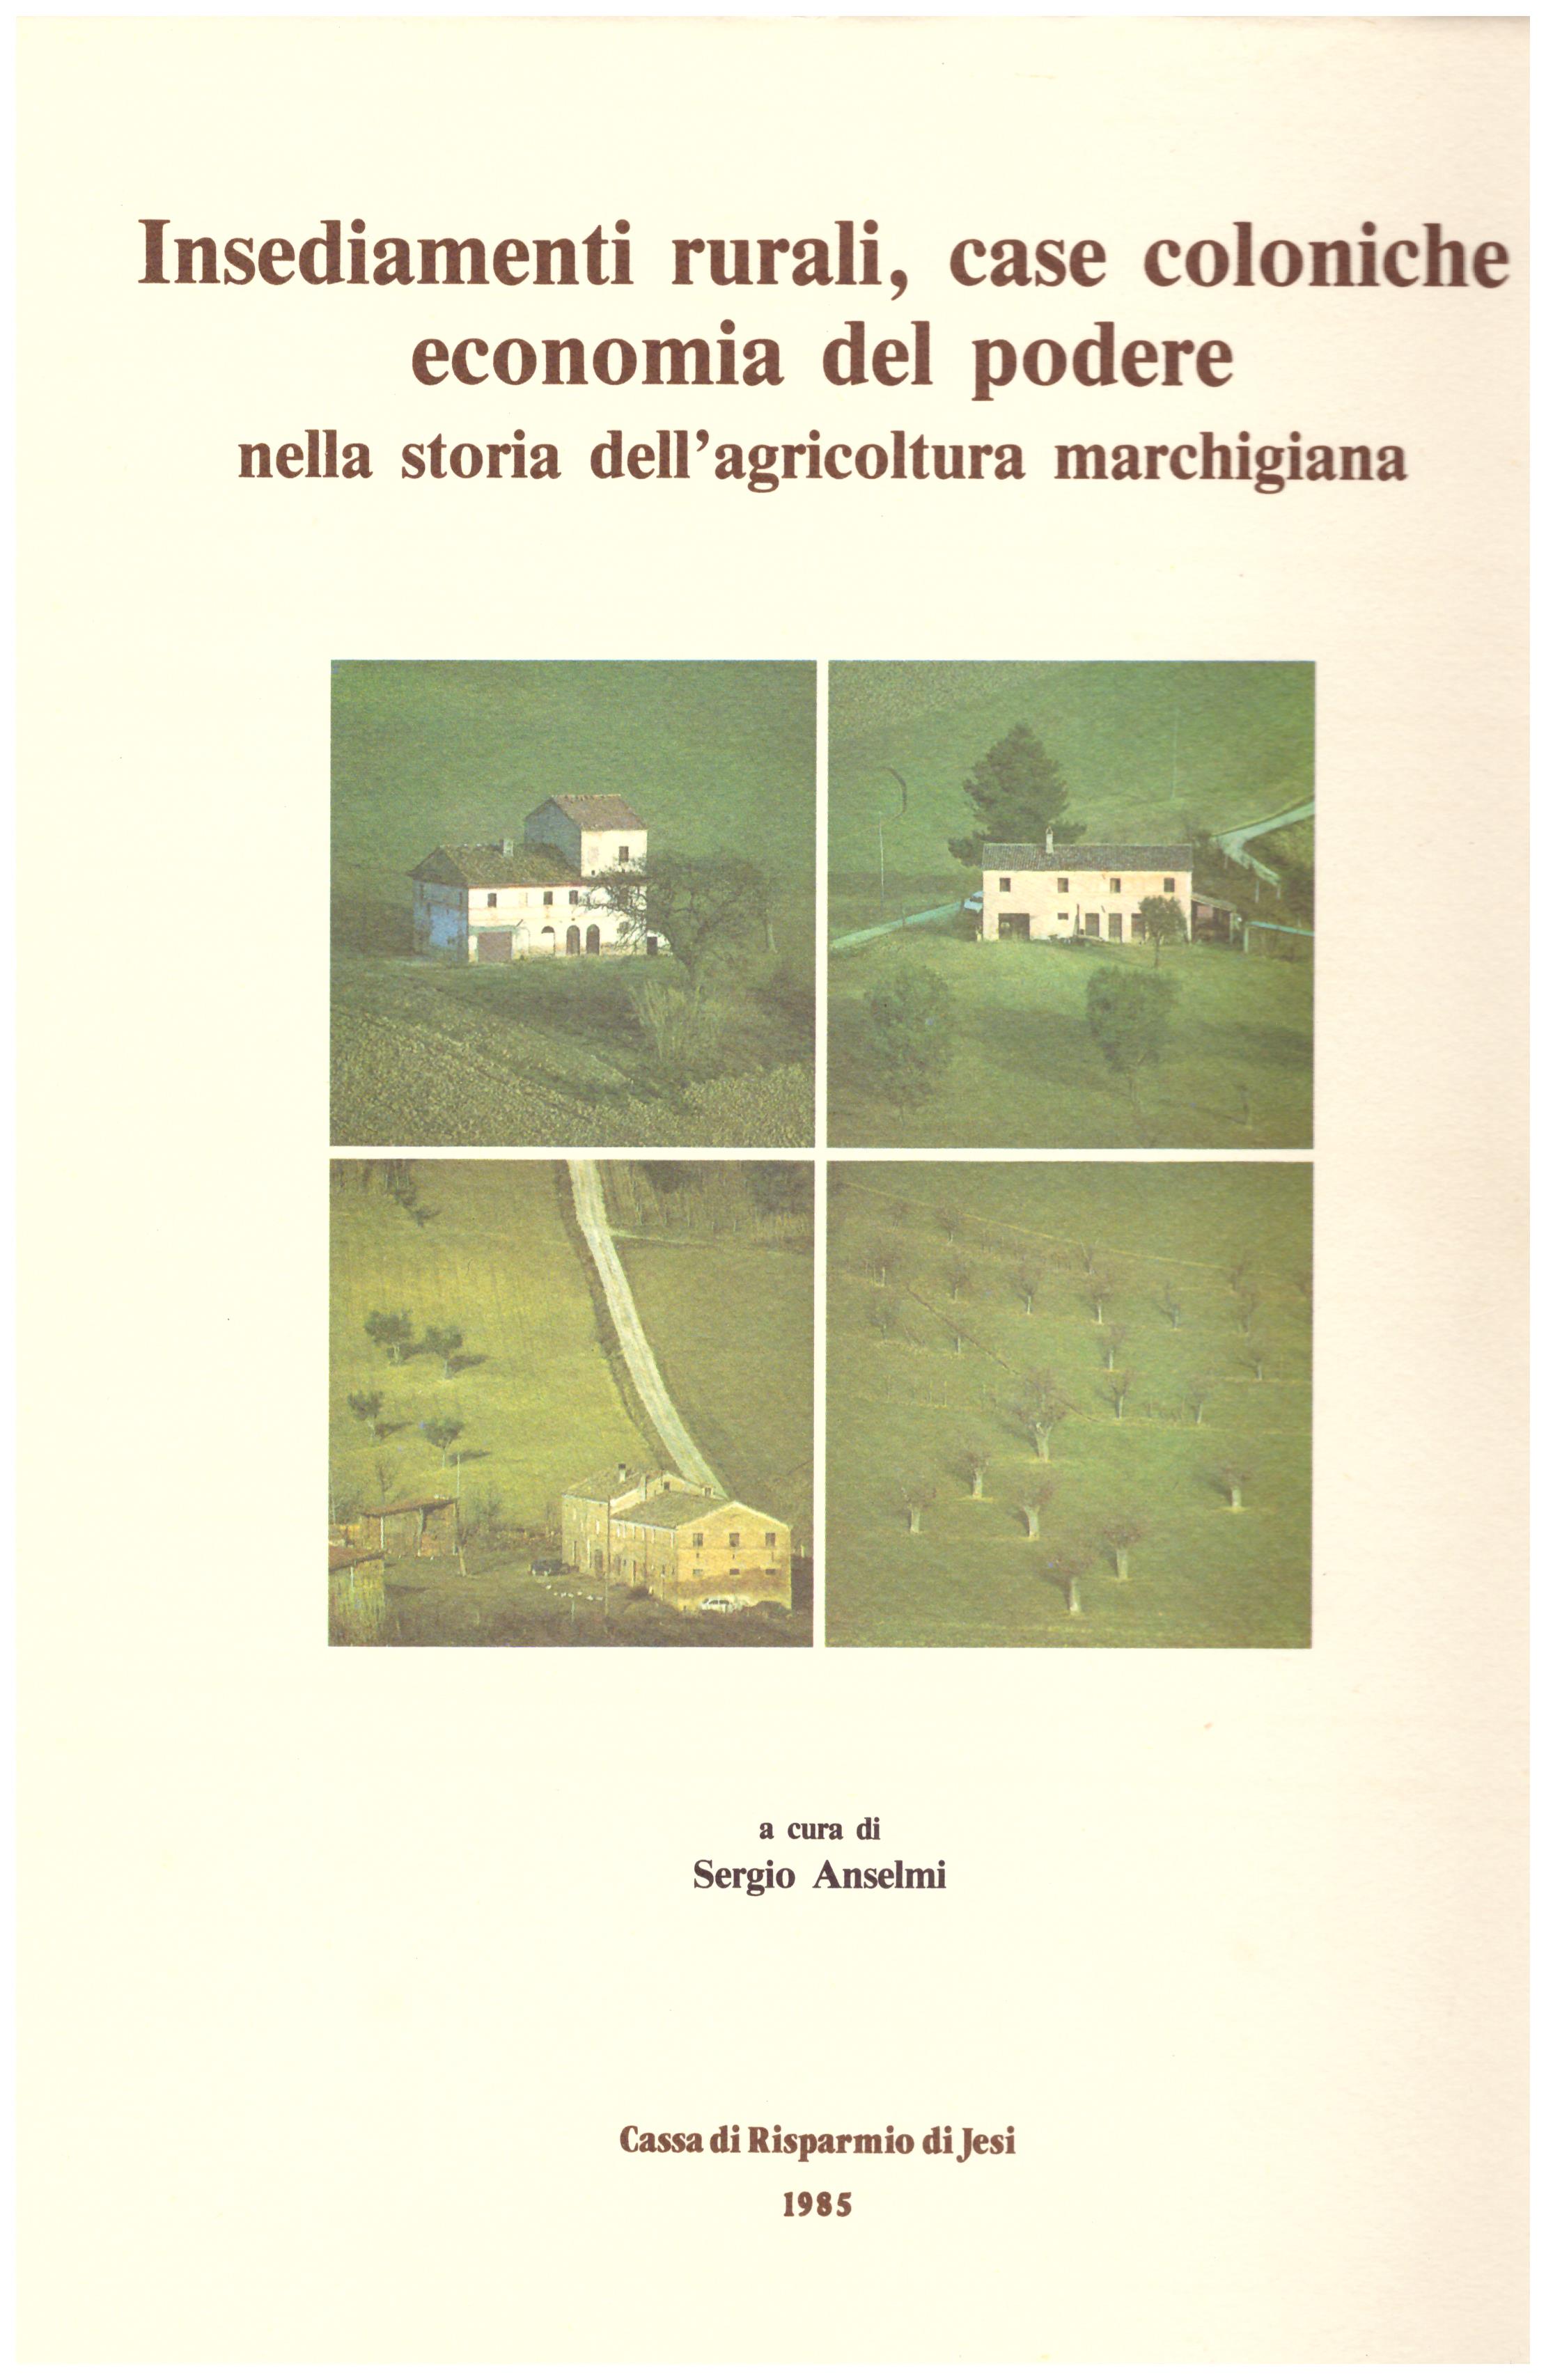 Insediamenti rurali, case coloniche, economia del podere nella storia dell’agricoltura marchigiana.